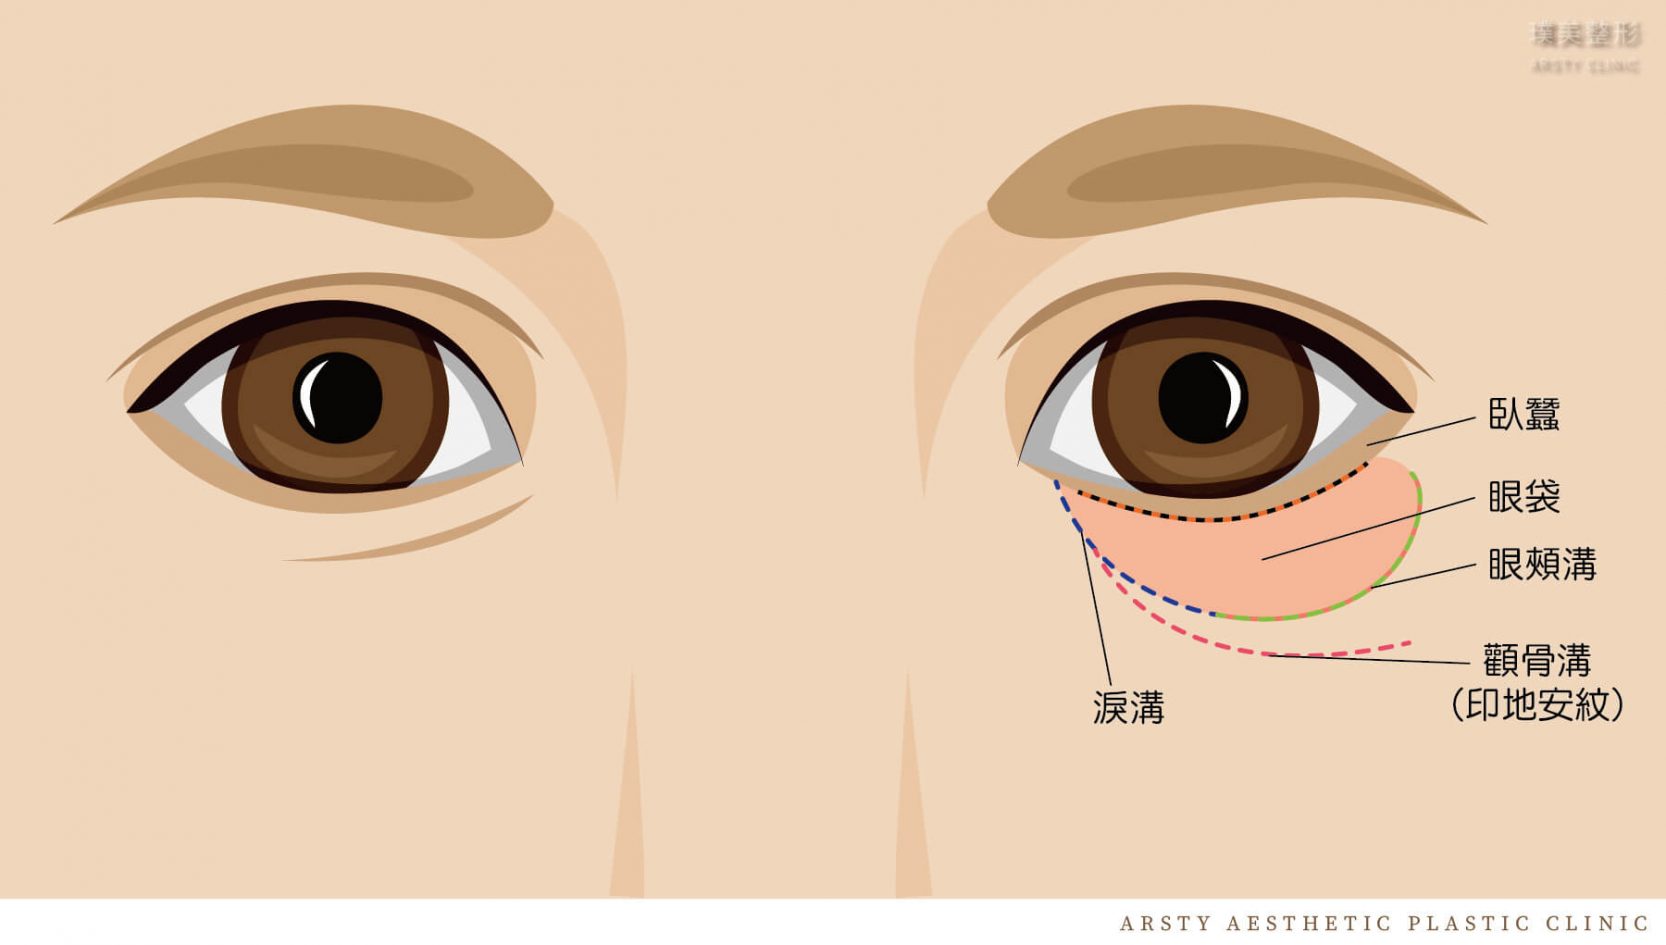 眼袋手術部位示意圖